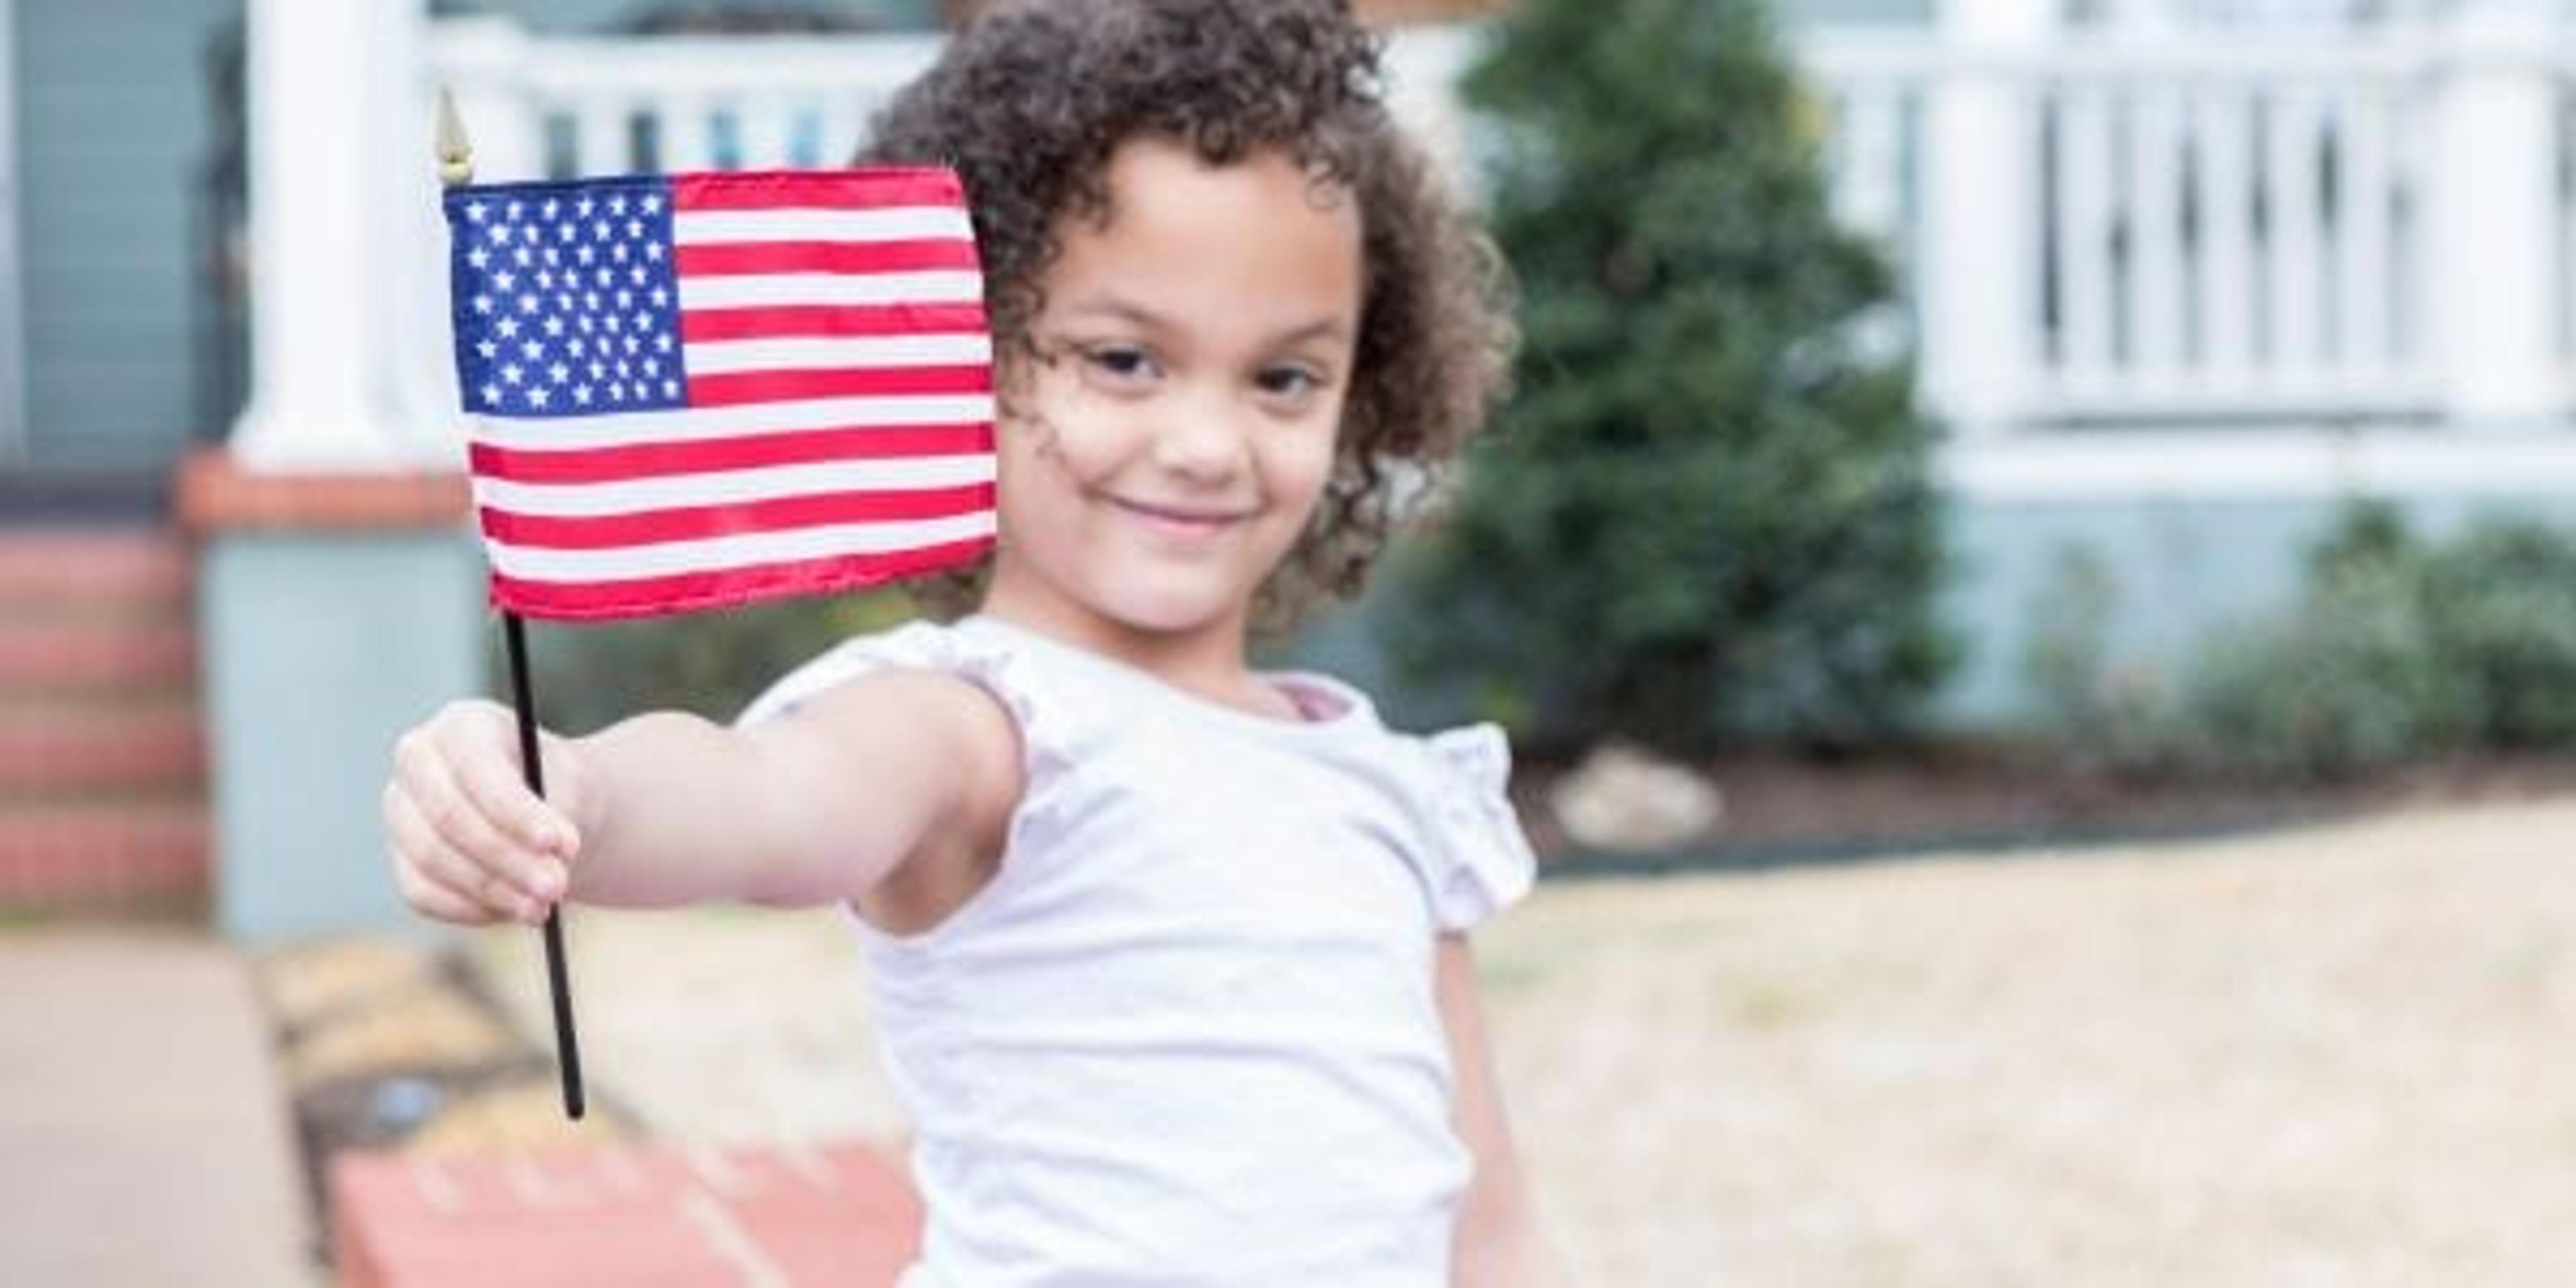 Little girl holding an American flag